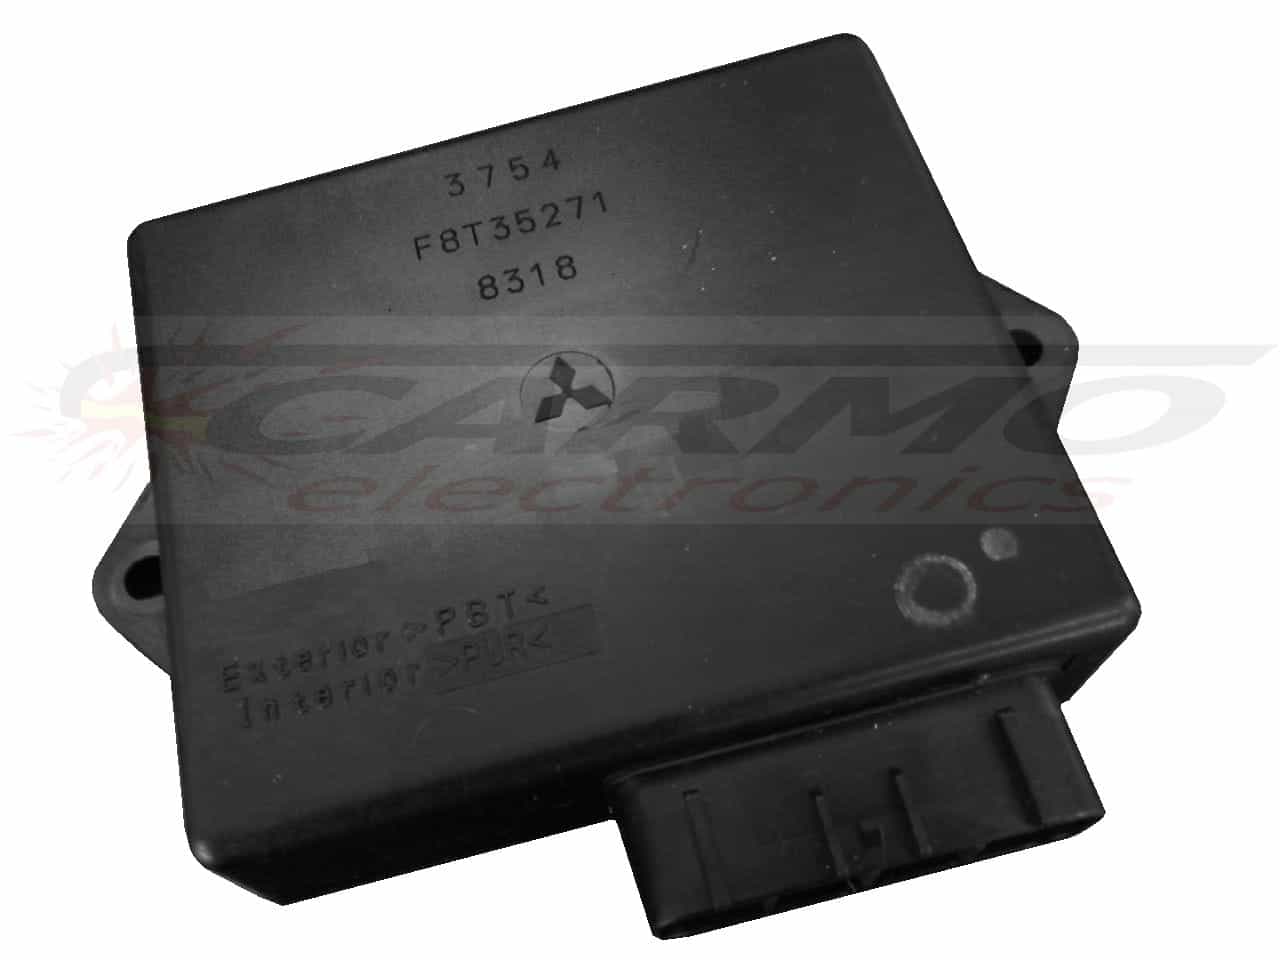 STX900 STS900 CDI ECU ignitor ignition unit F8T35271 / 21119-3754